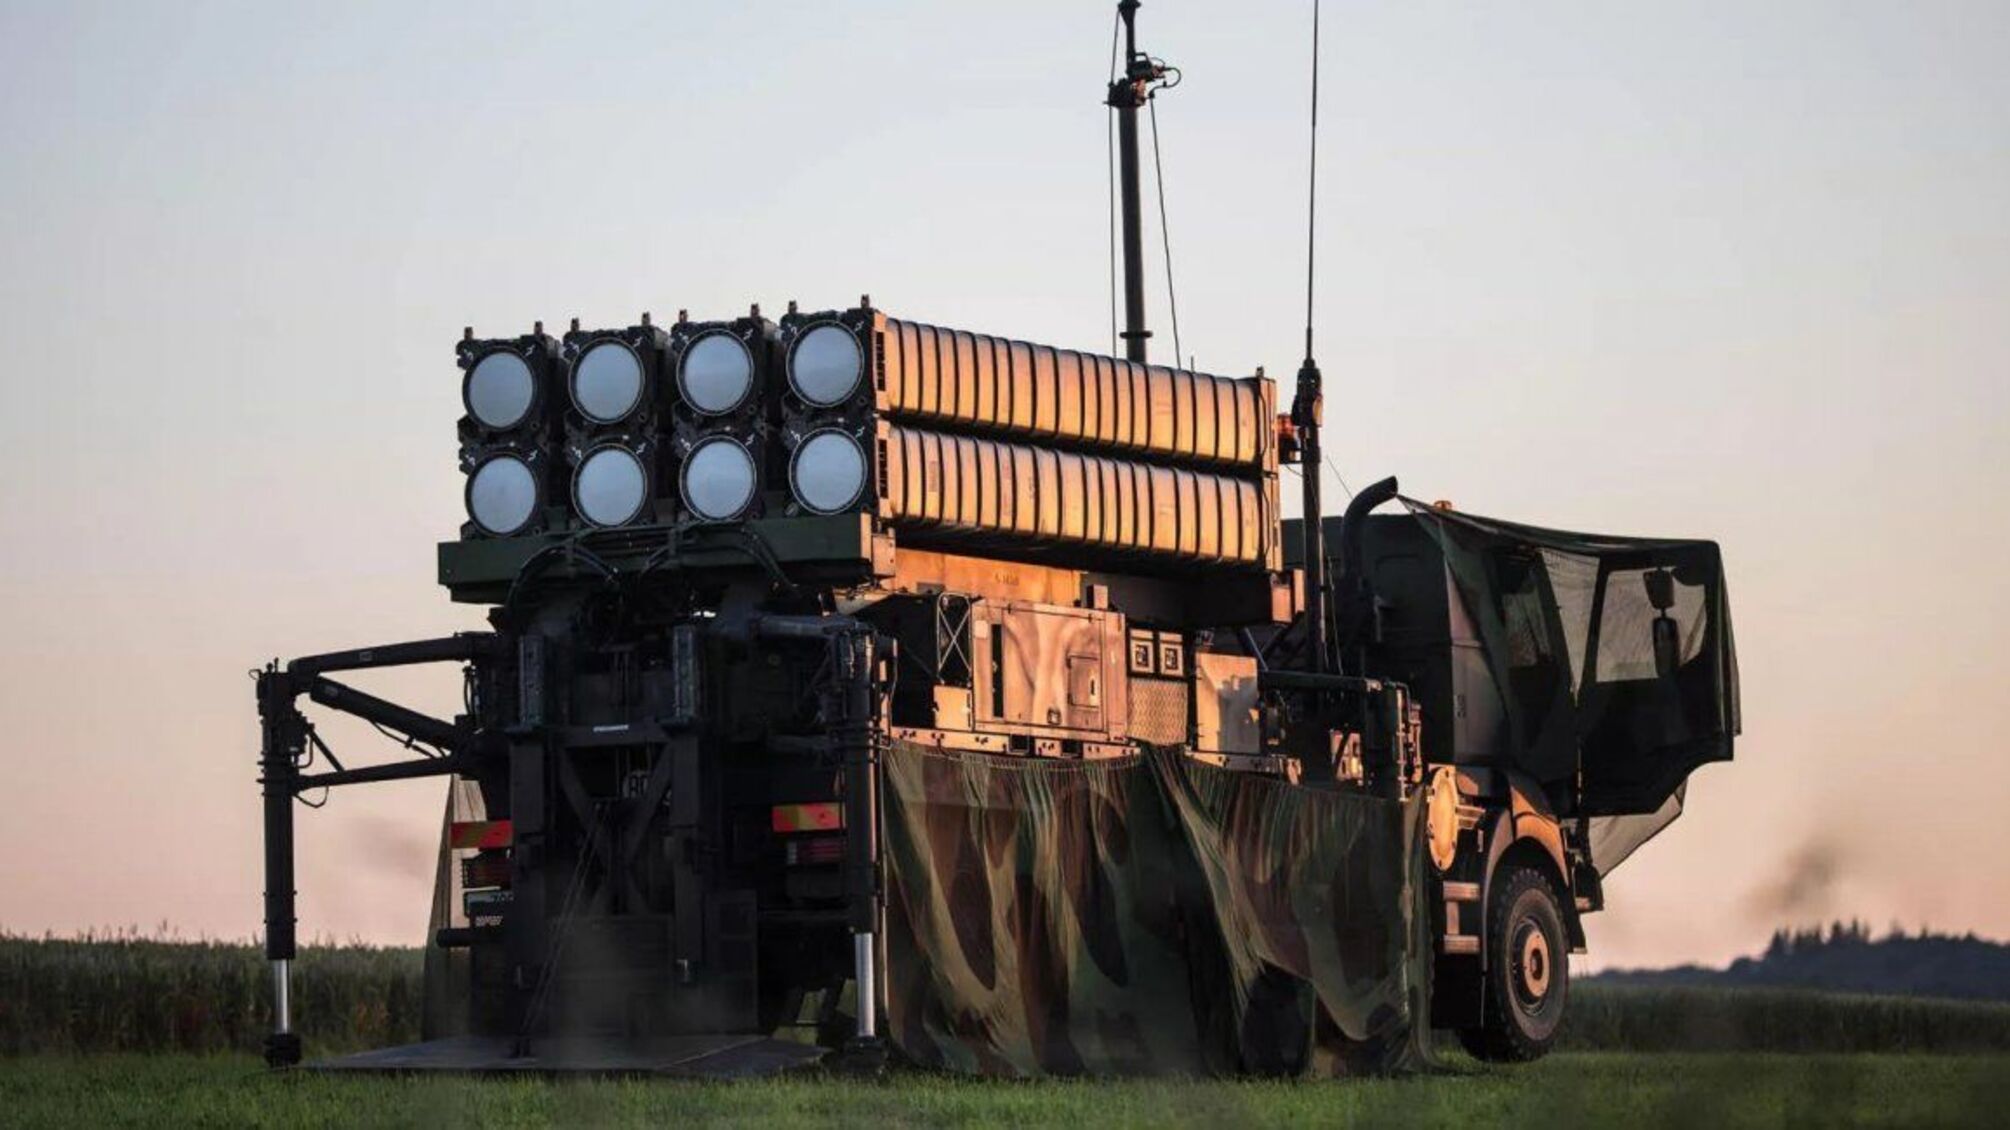 Перший SAMP-T прибув до України: що це за протиракетна система і яке її призначення на полі бою, – ЗМІ